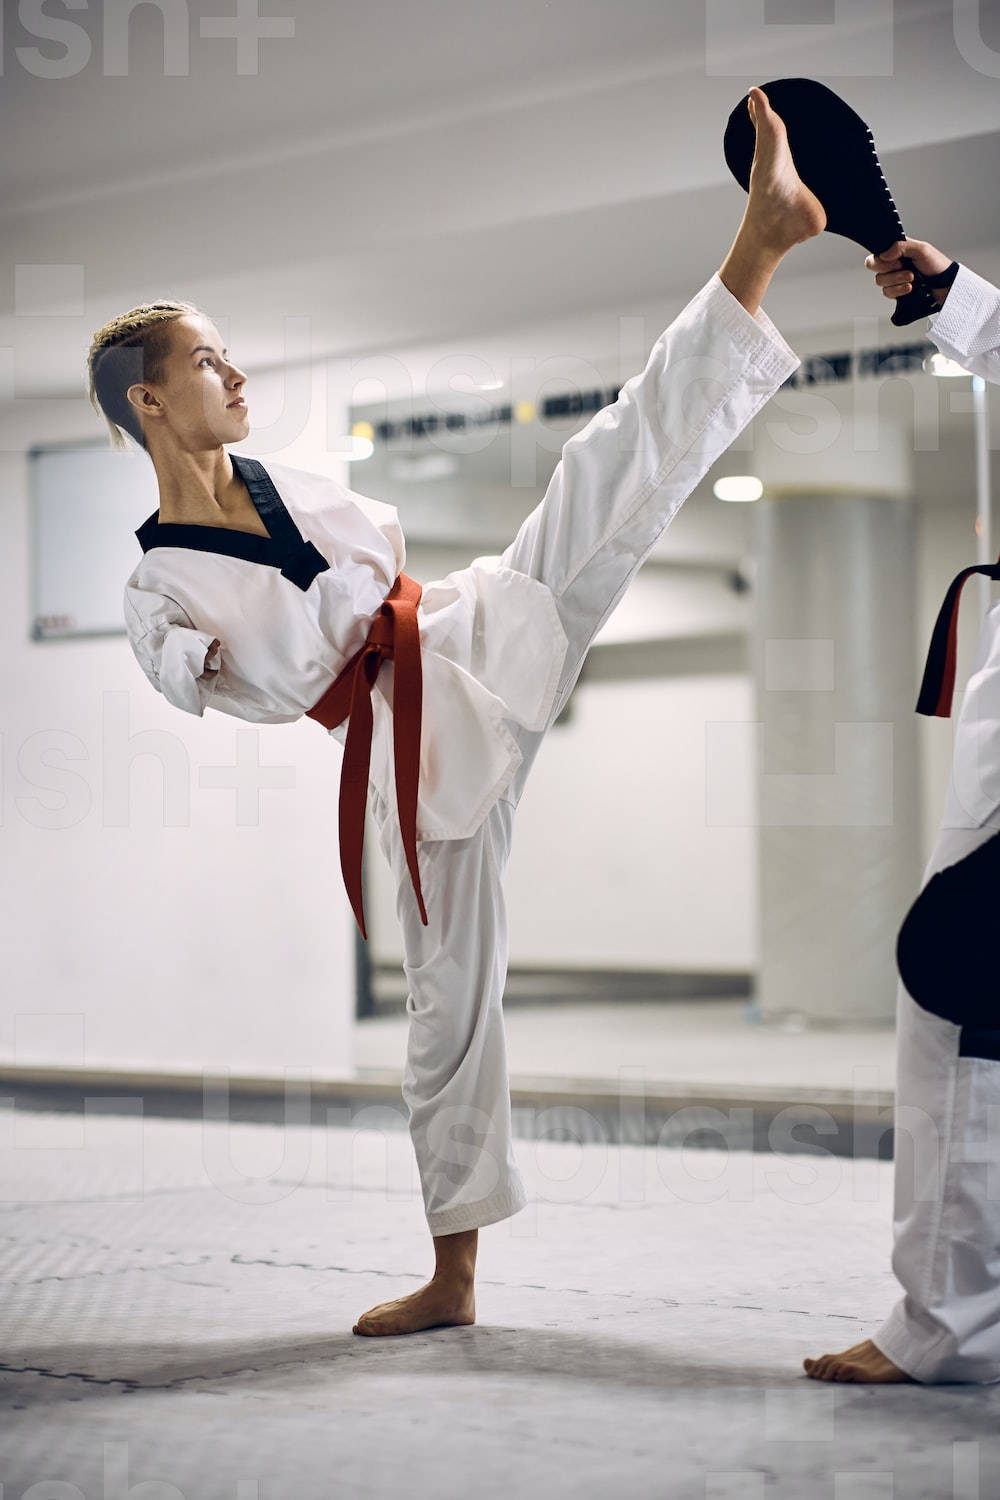 Karate Disabled Woman Kicking Wallpaper